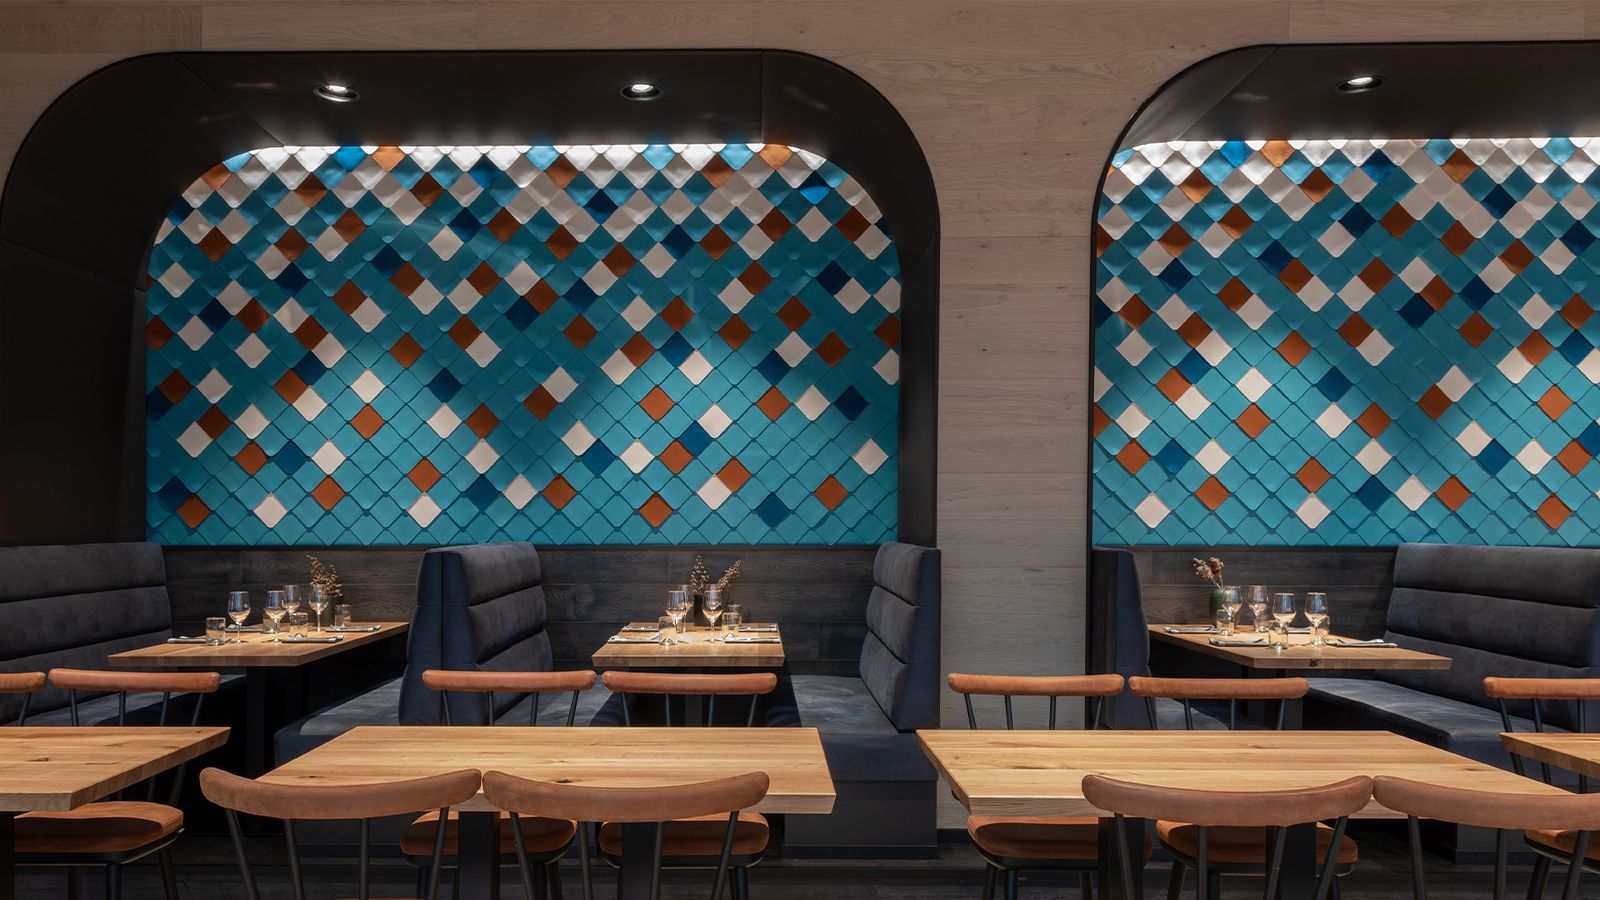 Neues Restaurant im Münchner Hotel Le Méridien verbindet Gemütlichkeit und Design